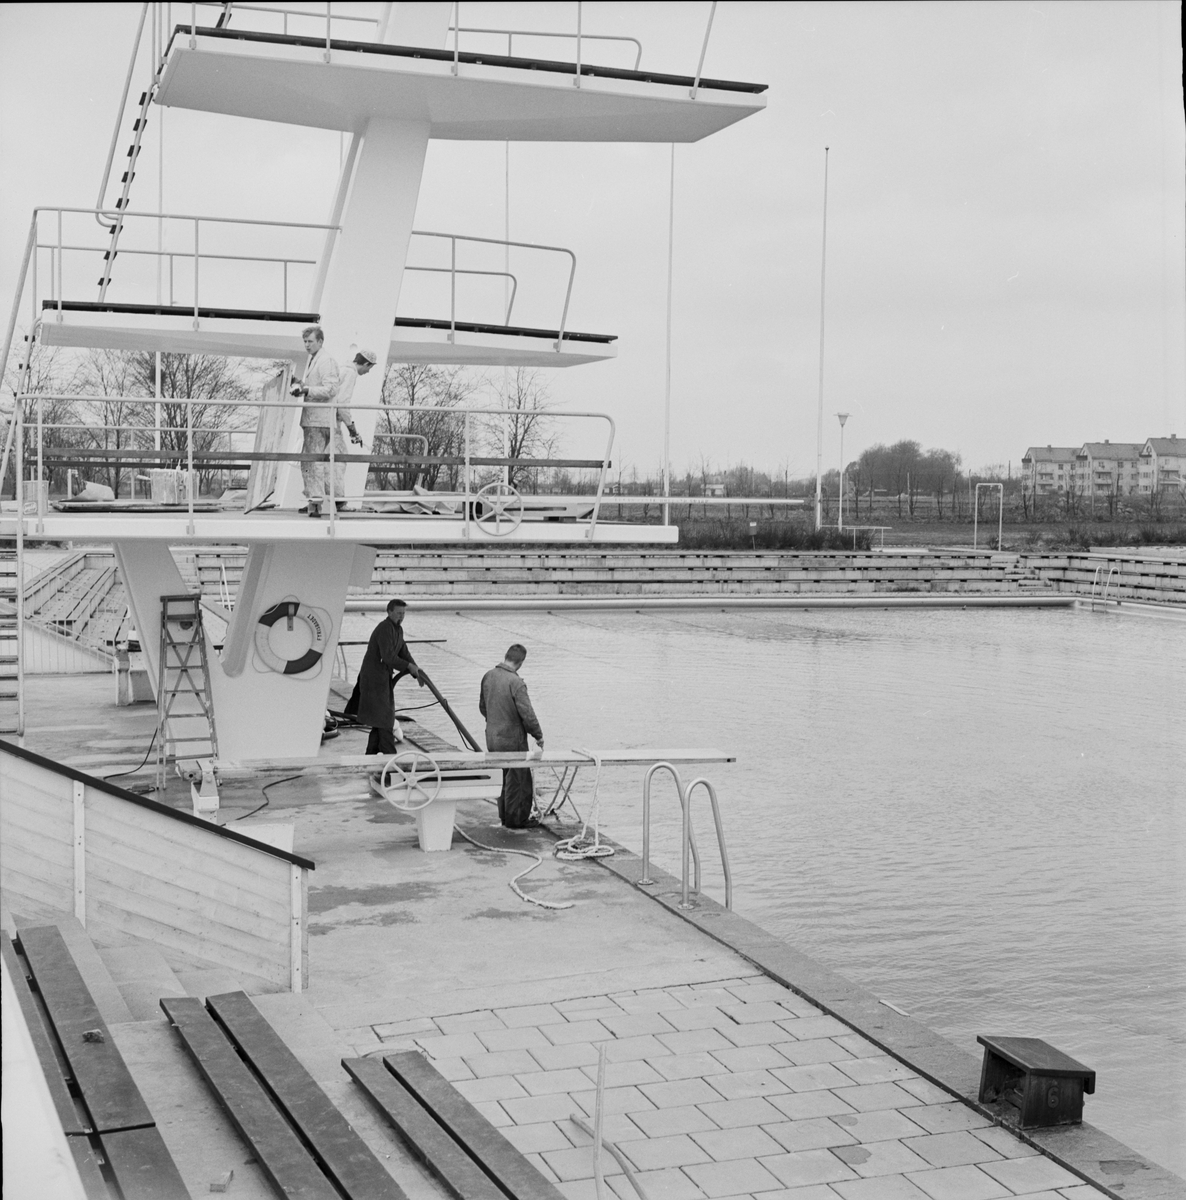 "Rustning av Fyrisbadet inför badsäsongen", Uppsala 1962